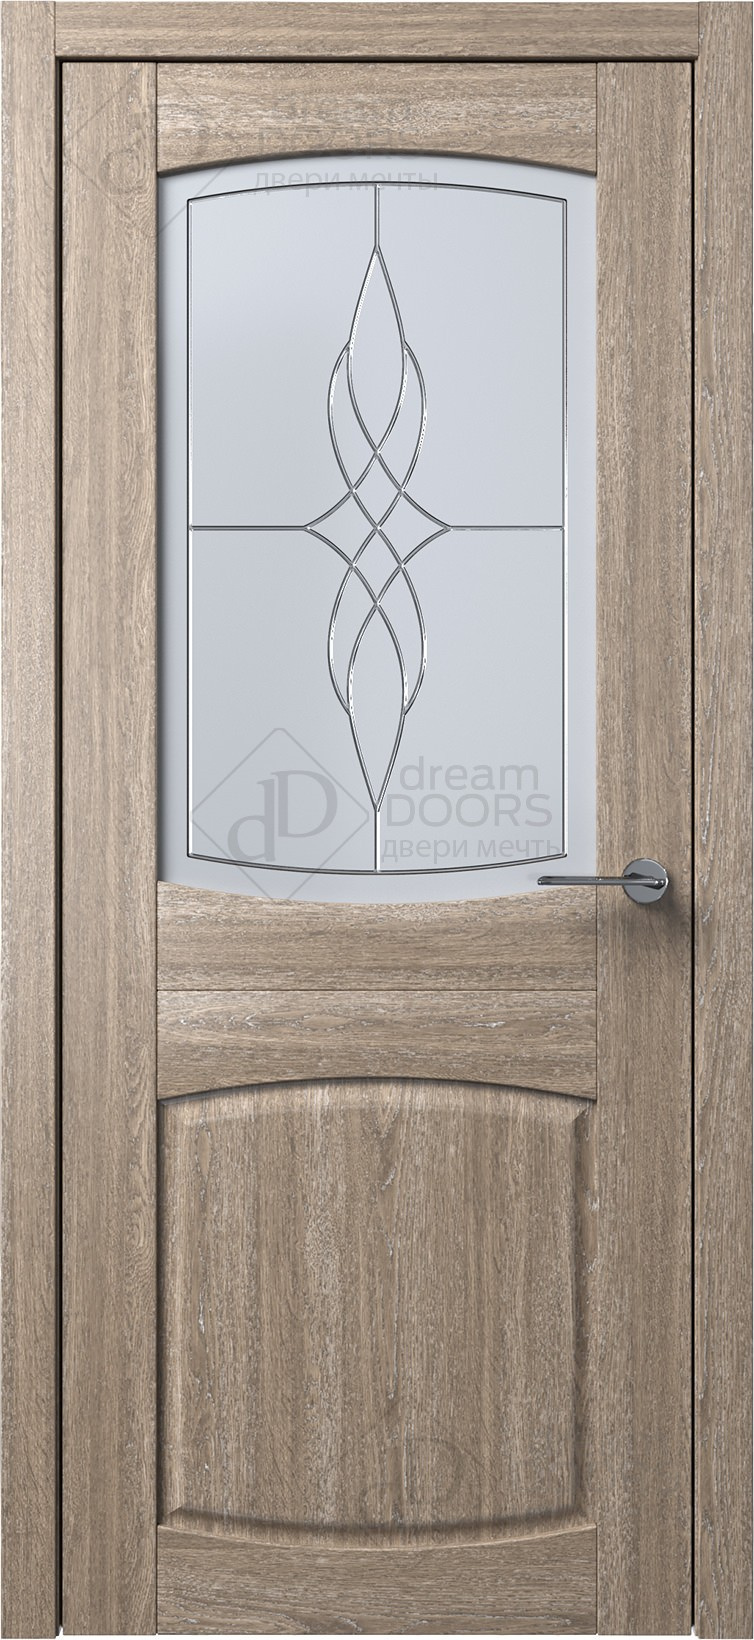 Dream Doors Межкомнатная дверь B5-4, арт. 5562 - фото №1